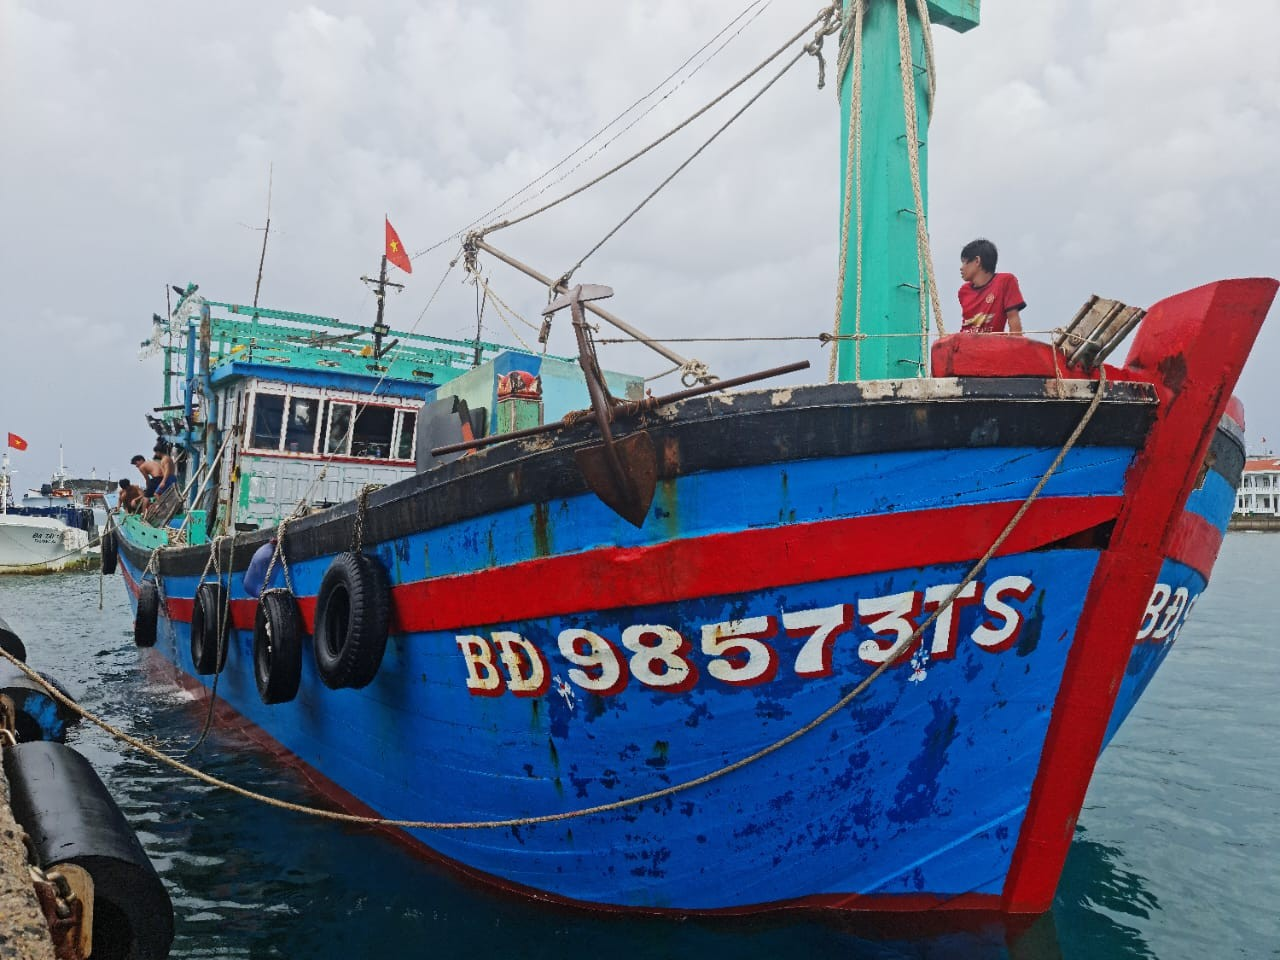 Tàu cá BĐ 98573TS cập cảng tại Trung tâm dịch vụ Hậu cần Kỹ thuật đảo Trường Sa đề nghị hỗ trợ